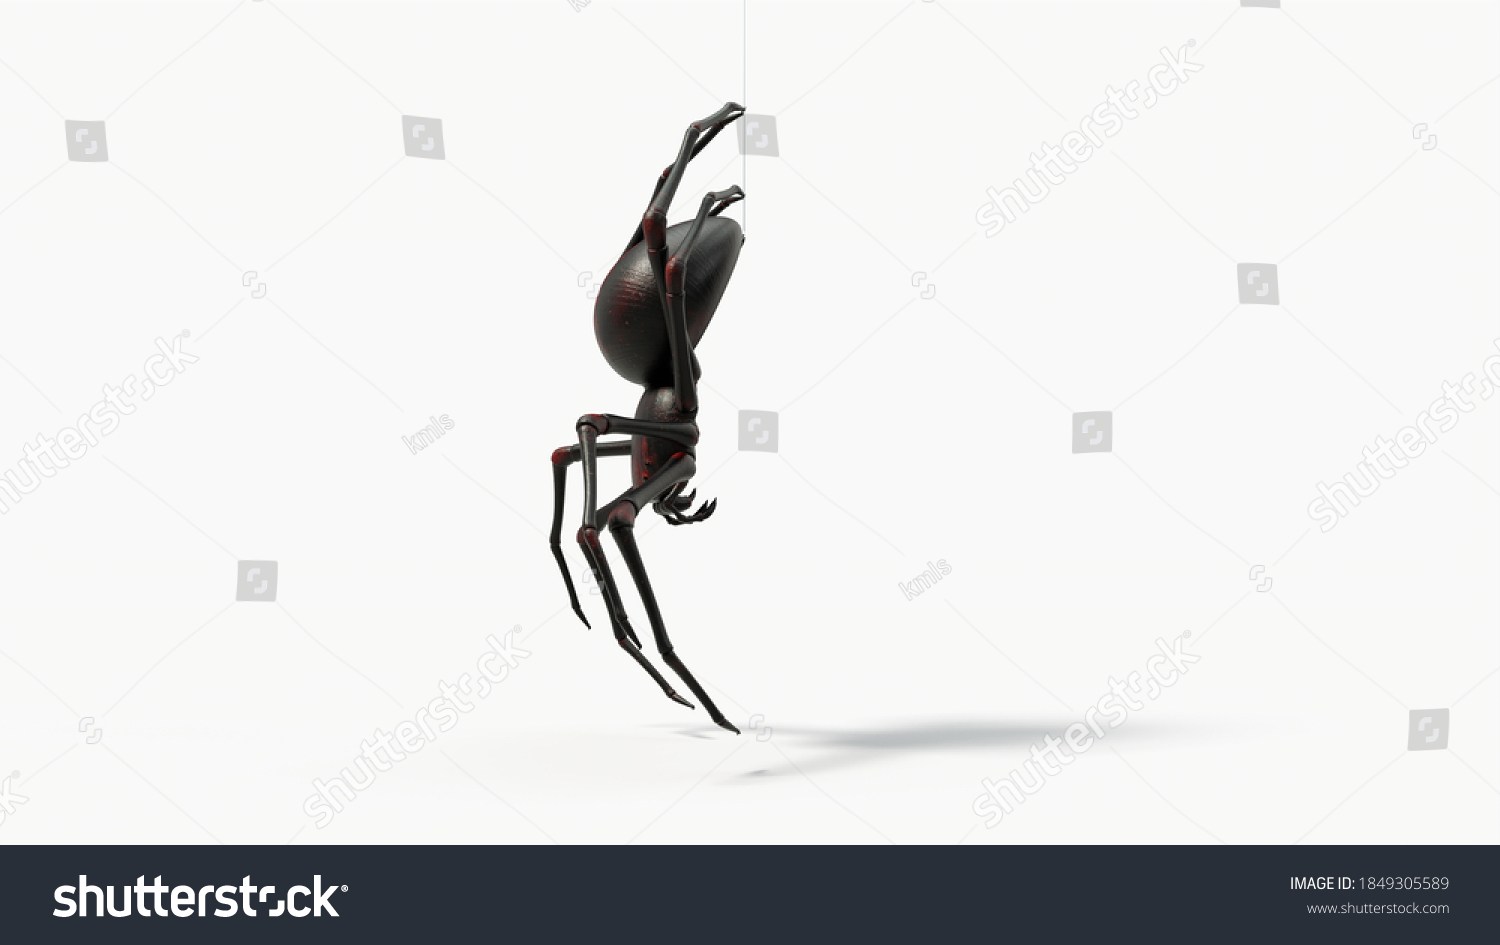 Hanging Black Spider Red Skin Details Stock Illustration 1849305589 Shutterstock 6591